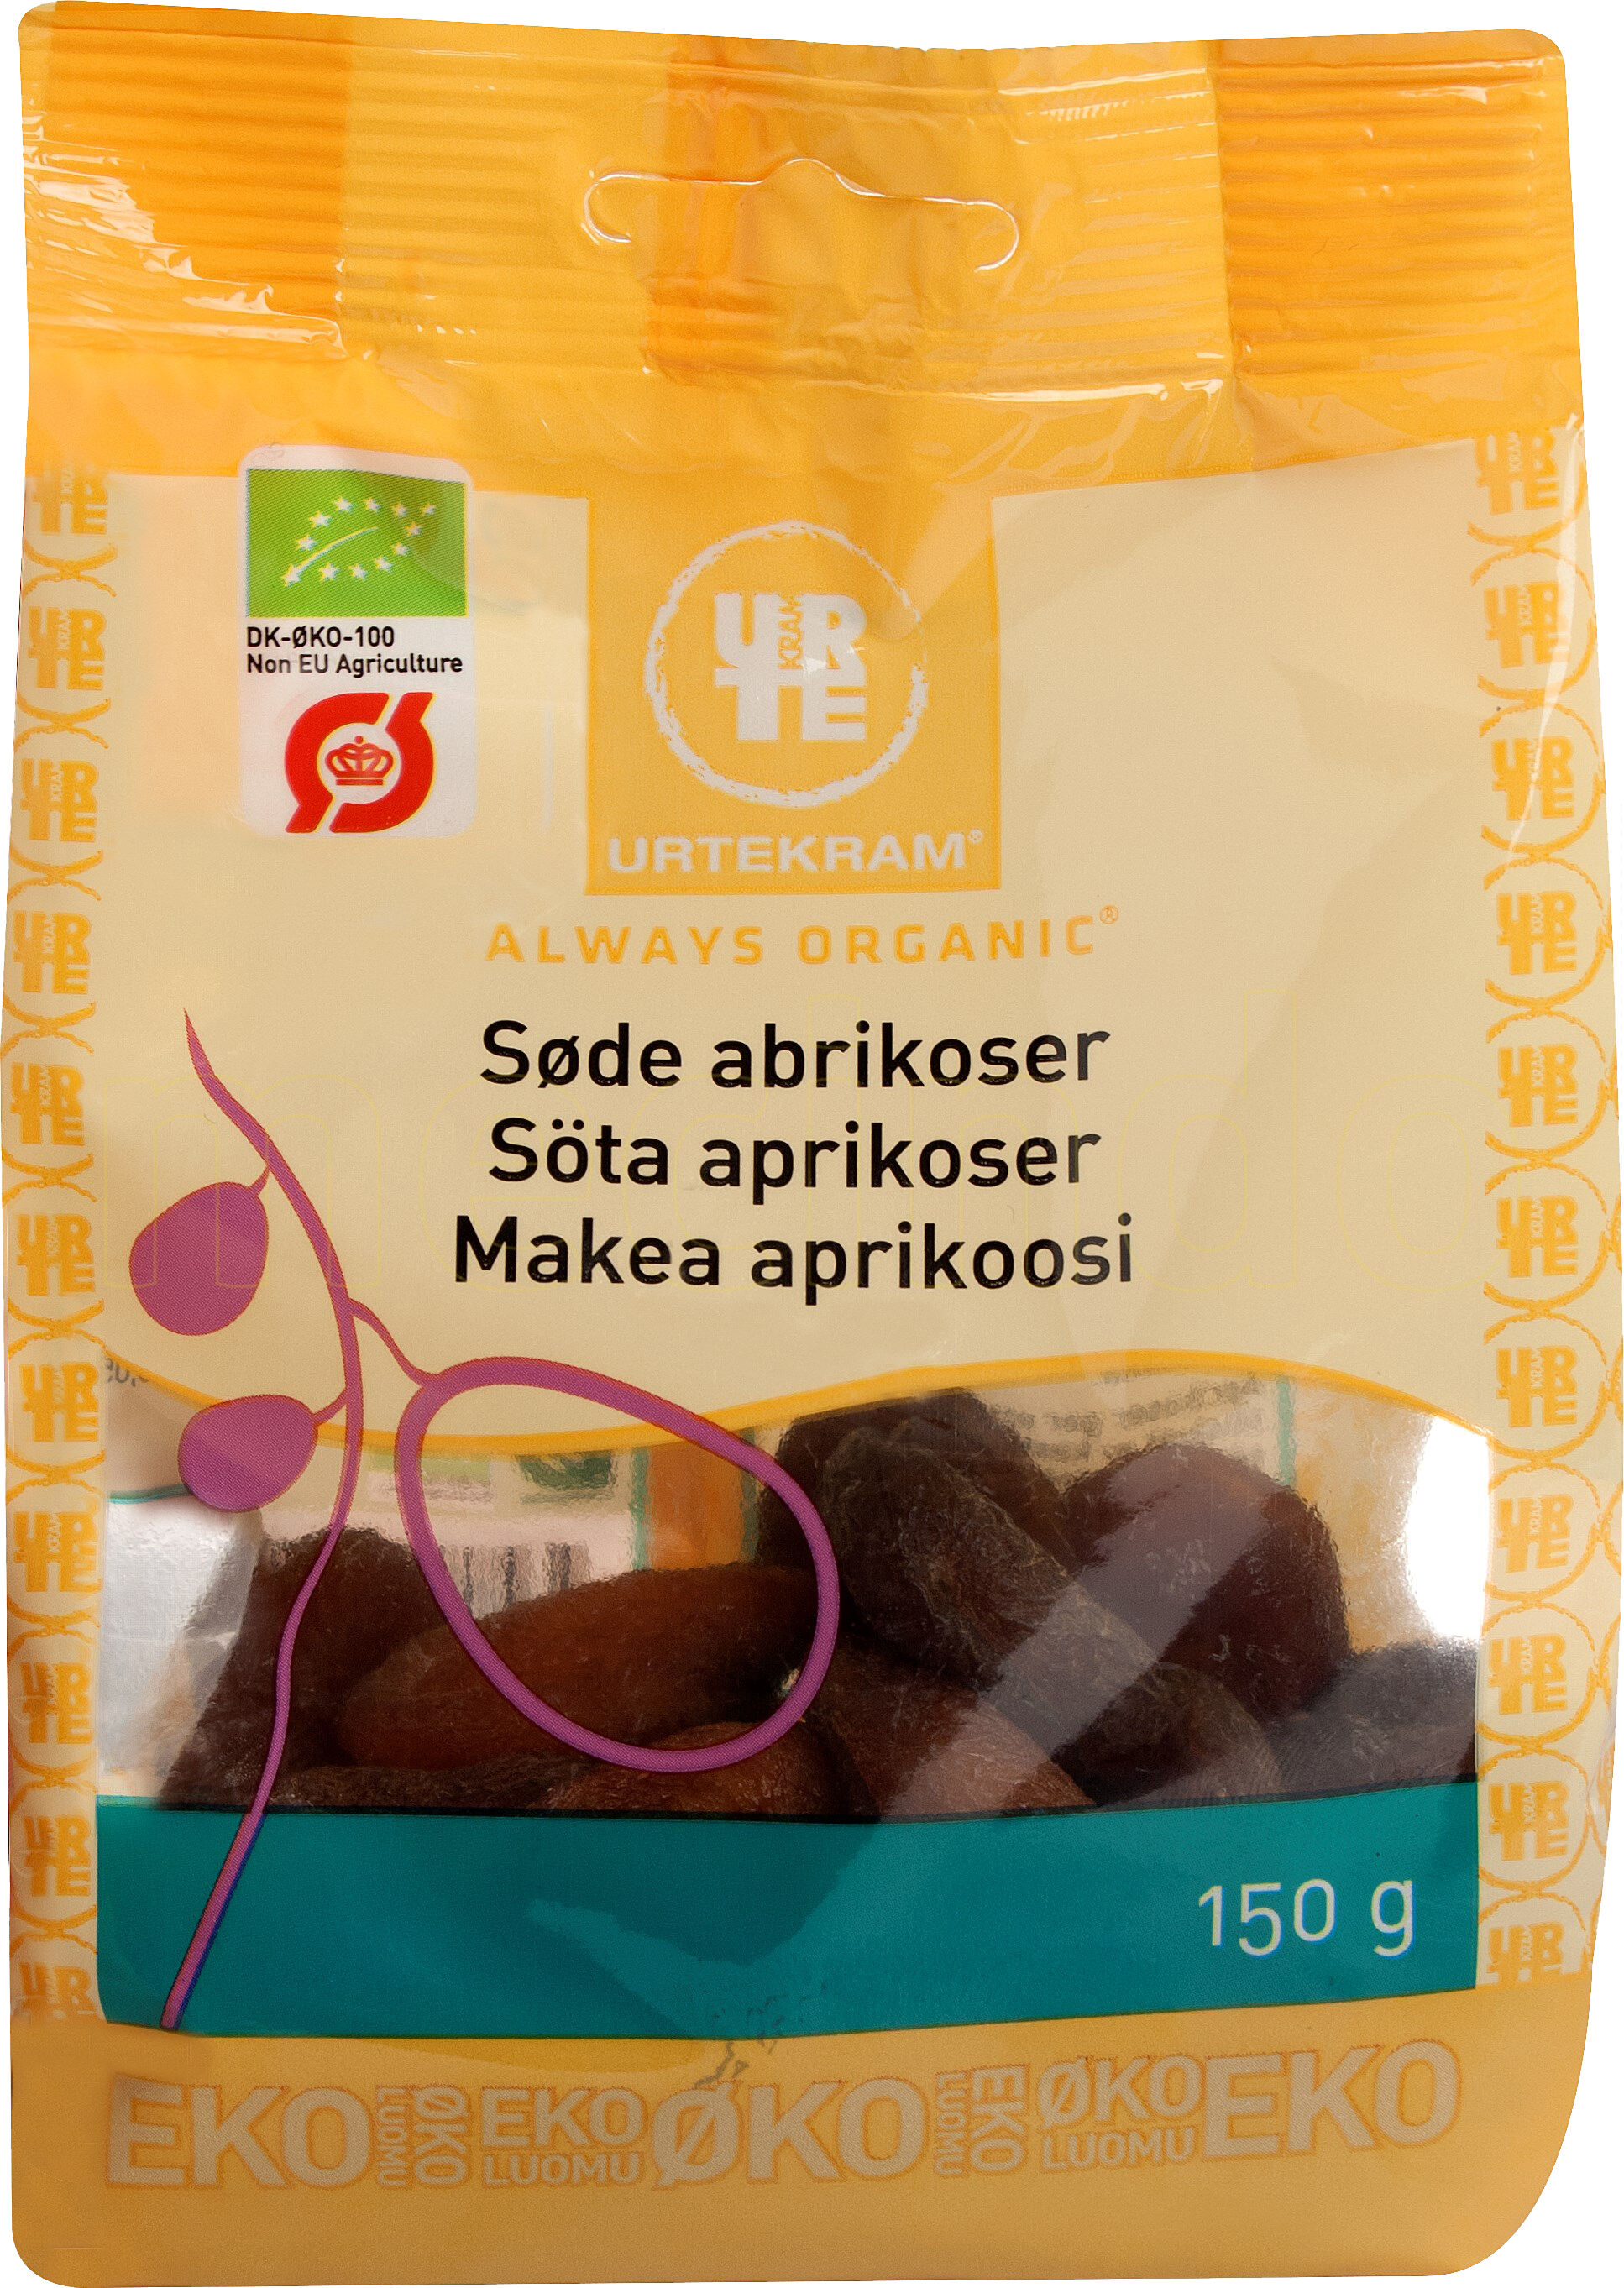 Urtekram Abrikoser søde Ø - 150 g